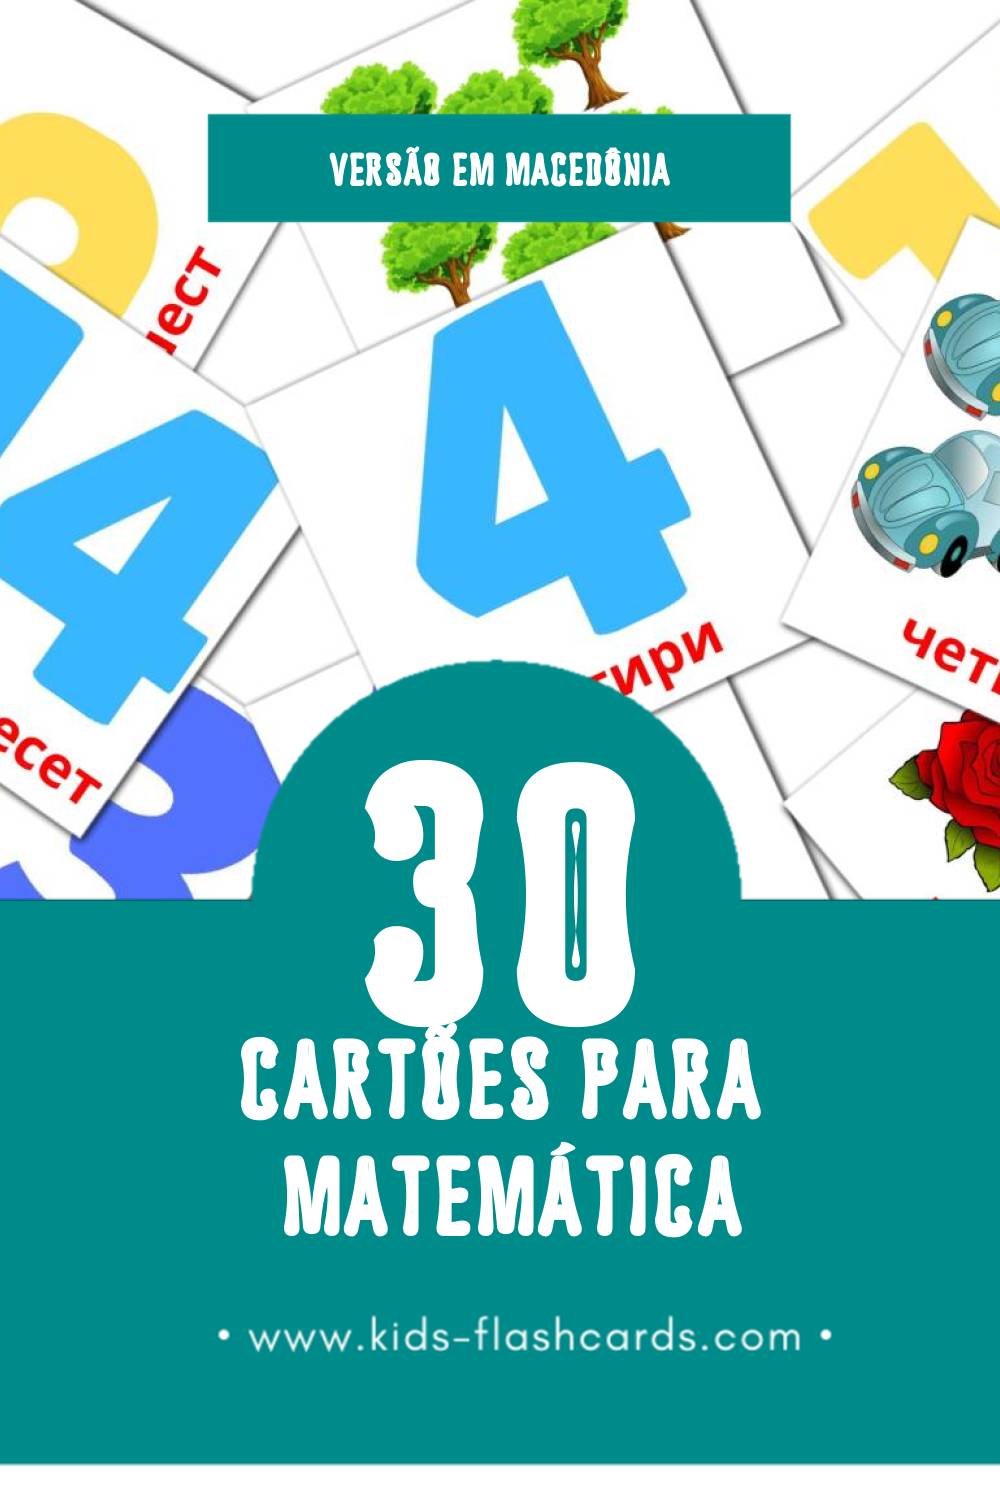 Flashcards de Математика Visuais para Toddlers (30 cartões em Macedônia)